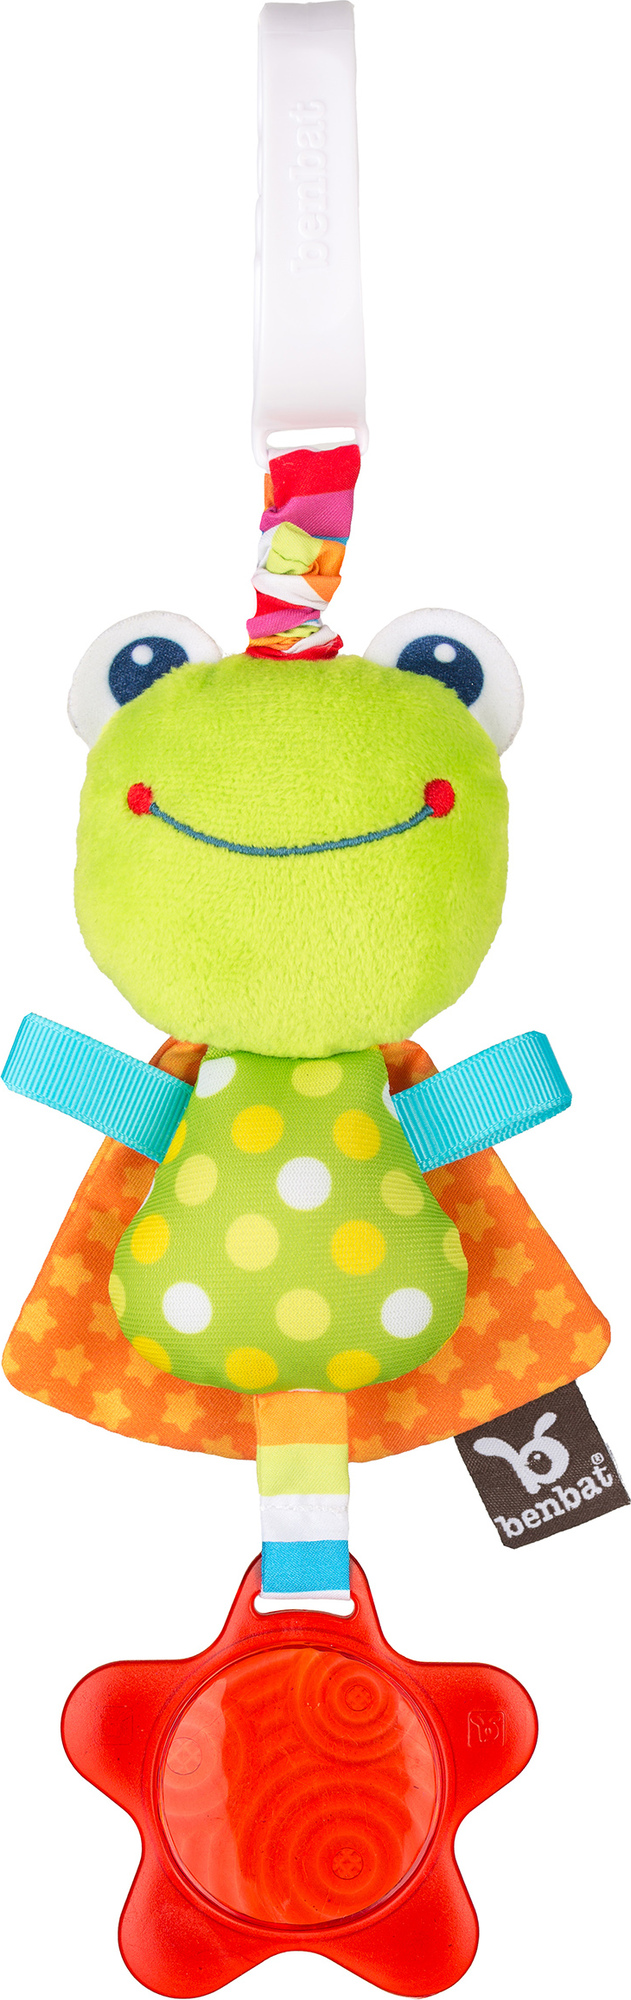 BenBat Závěsná hračka, Frog